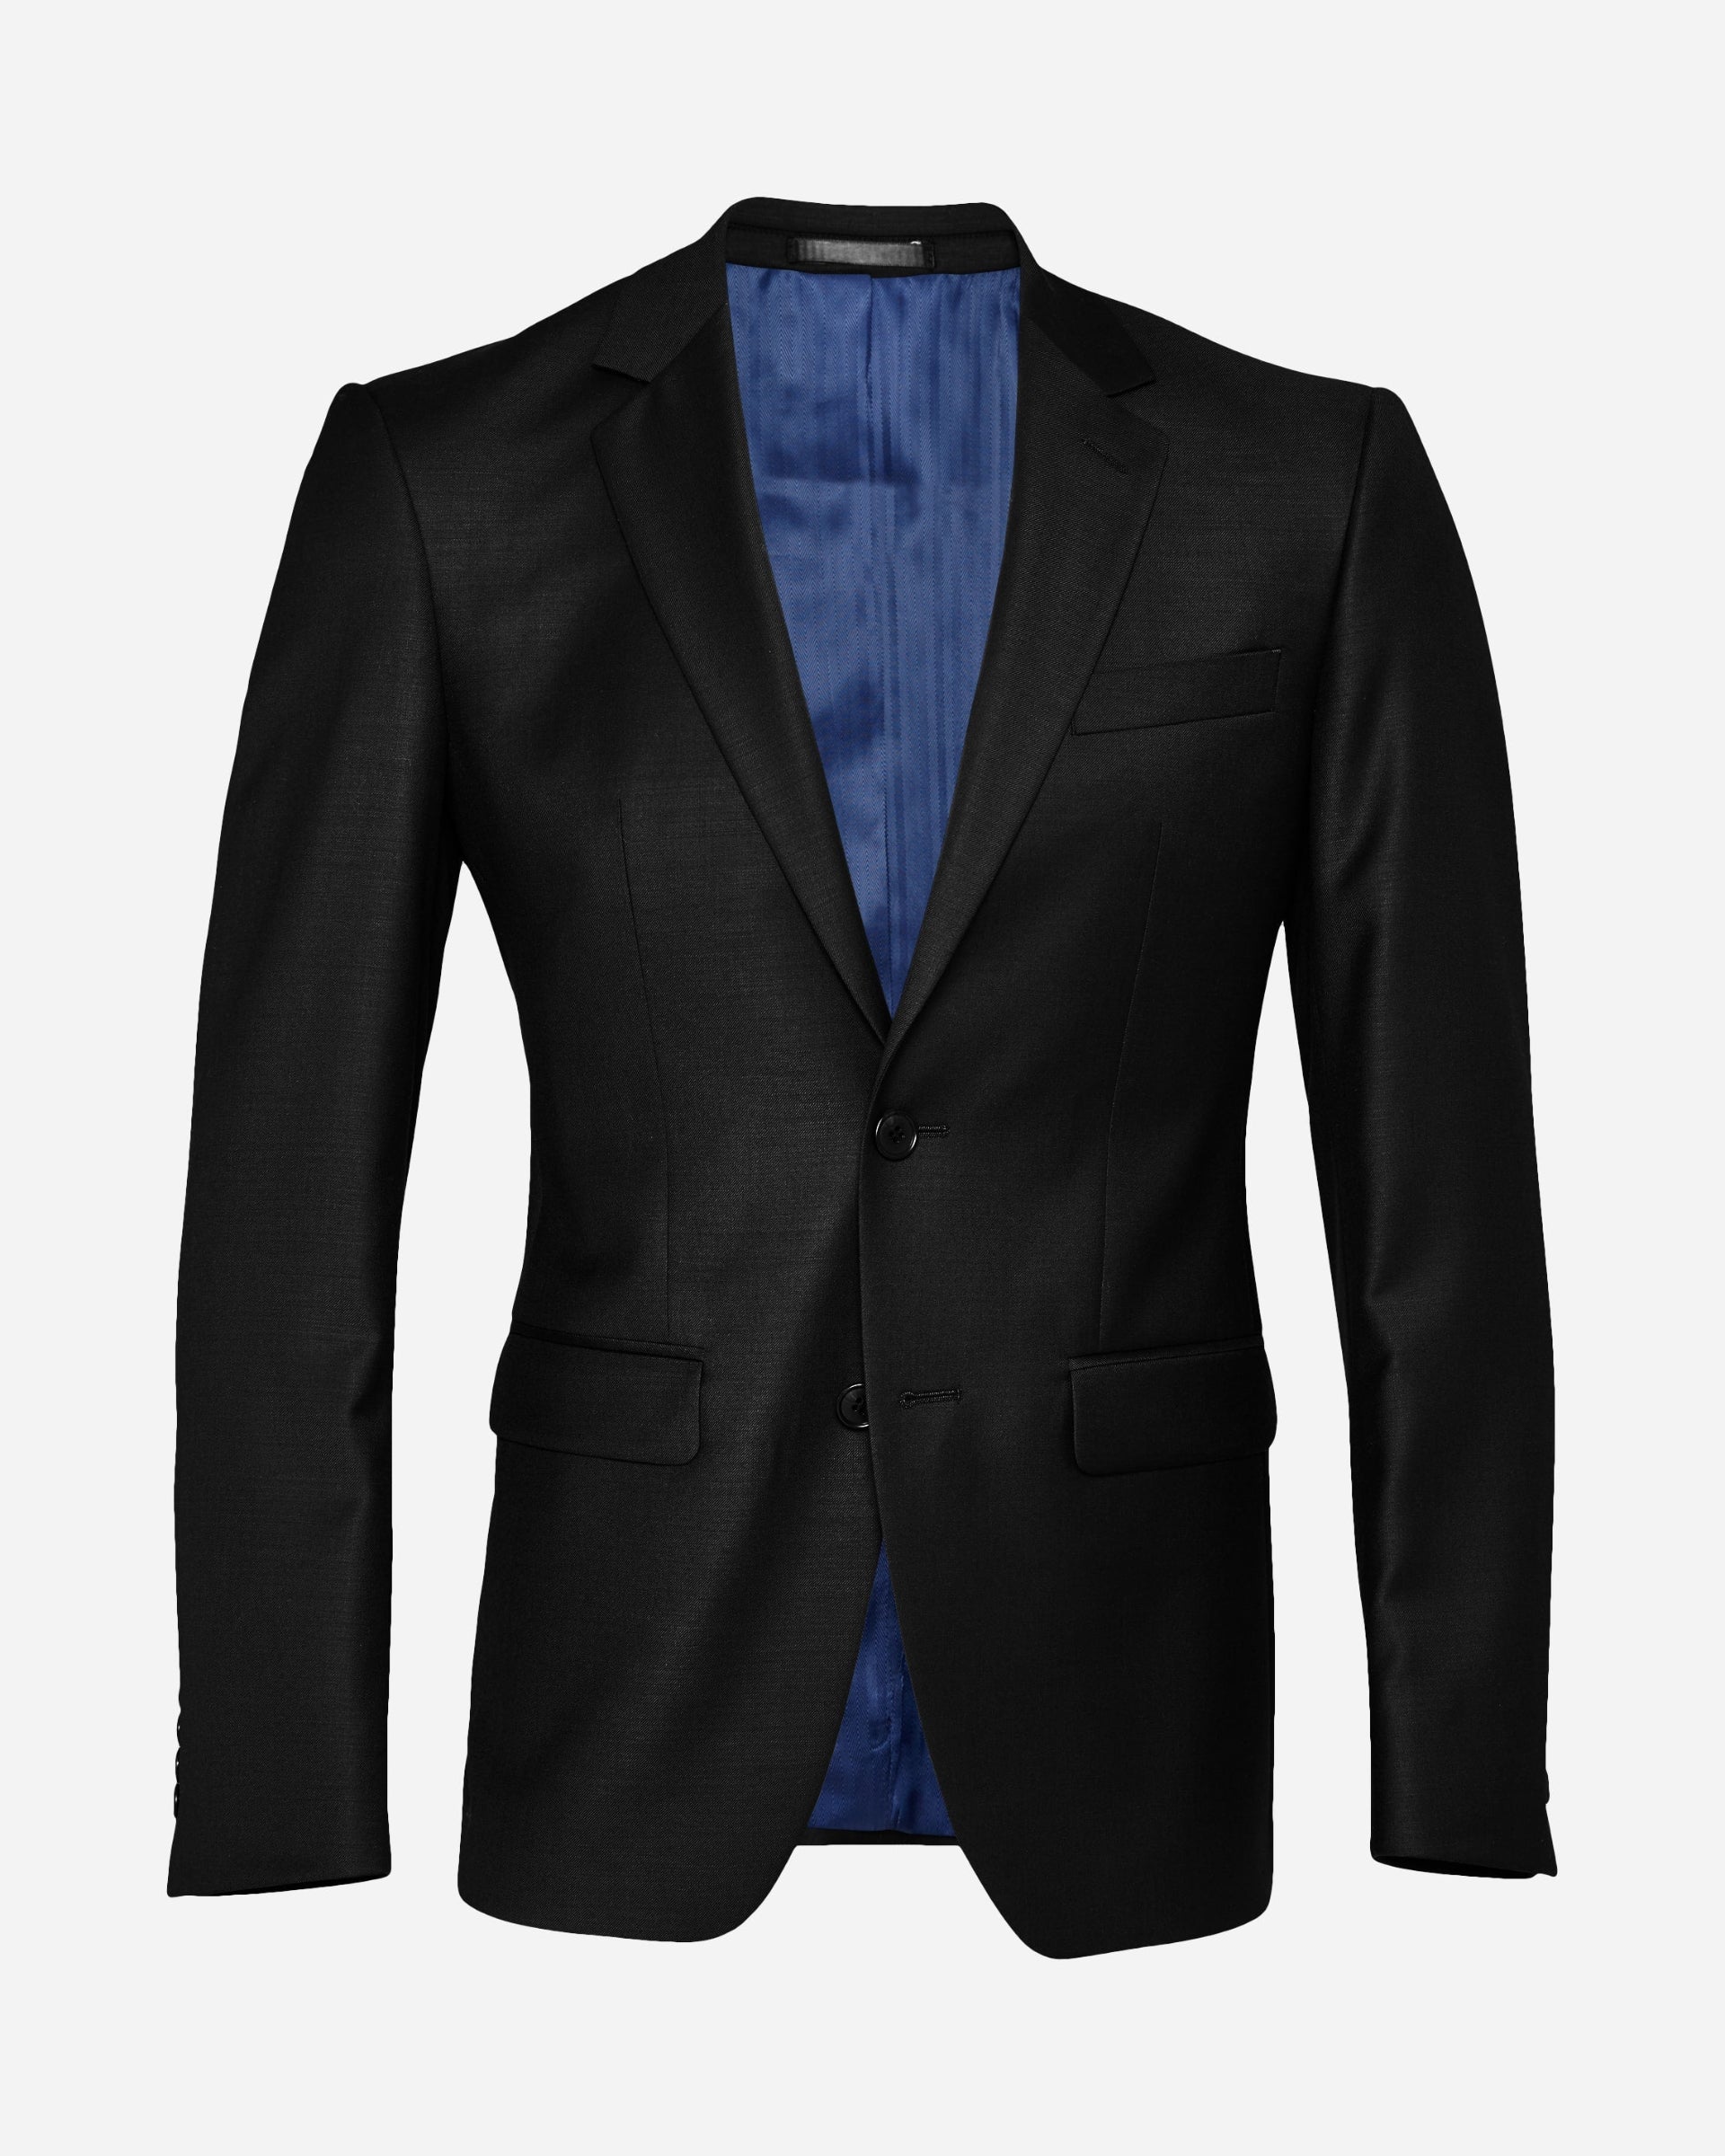 Berlanas Black Suit - Men's Suits at Menzclub